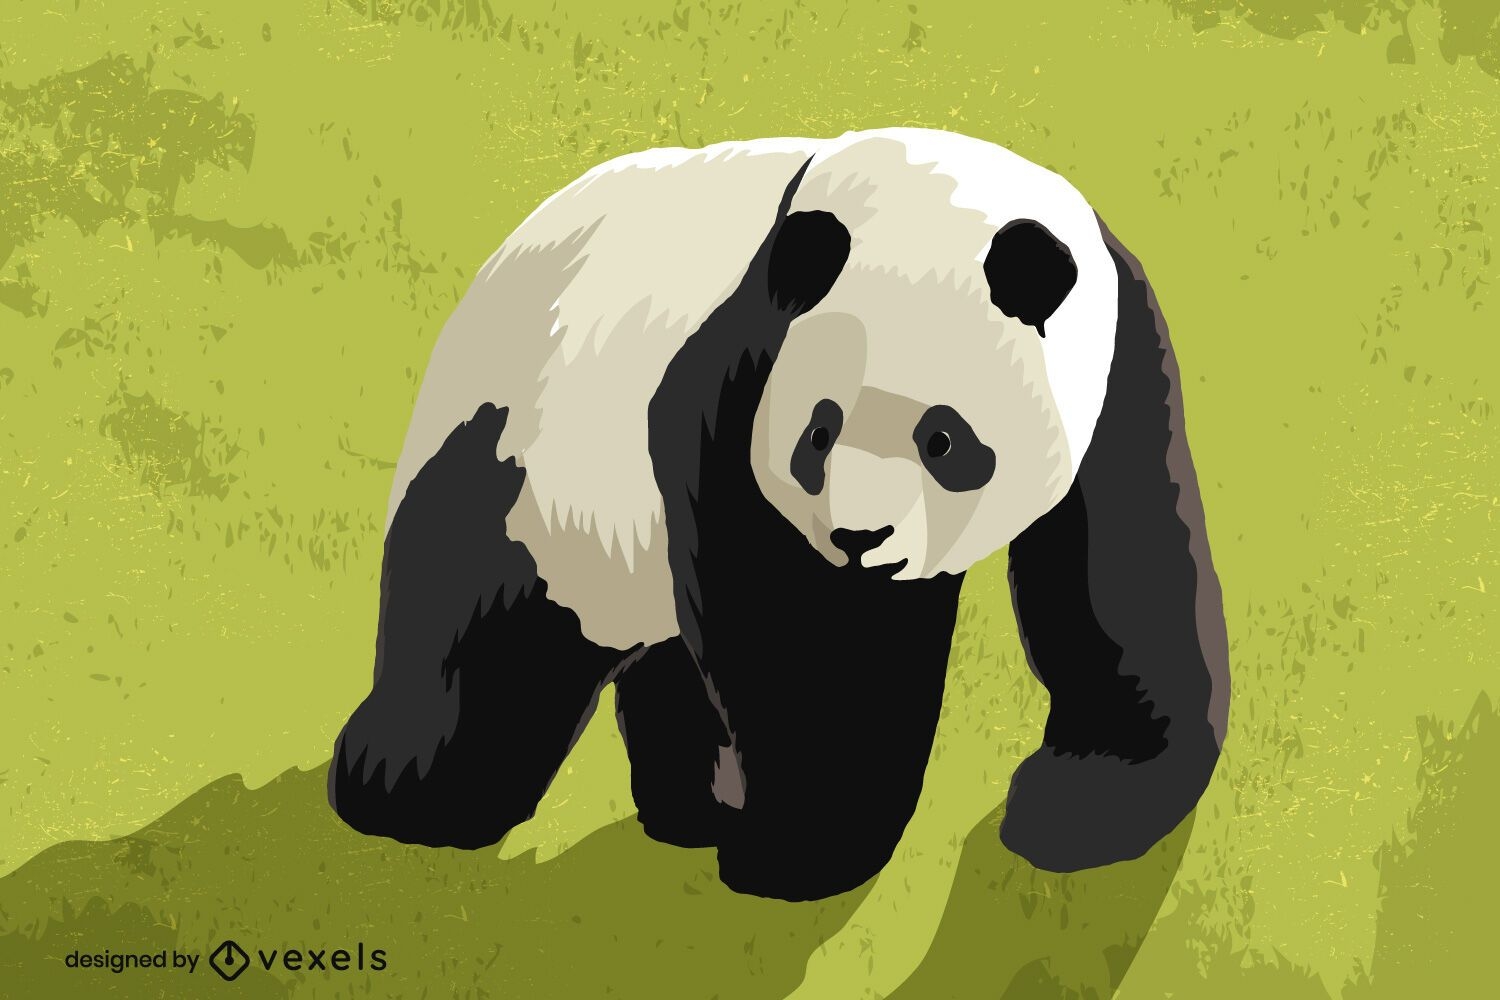 Ilustração Furiosa Do Desenho Animado Do Urso Panda Ilustração do